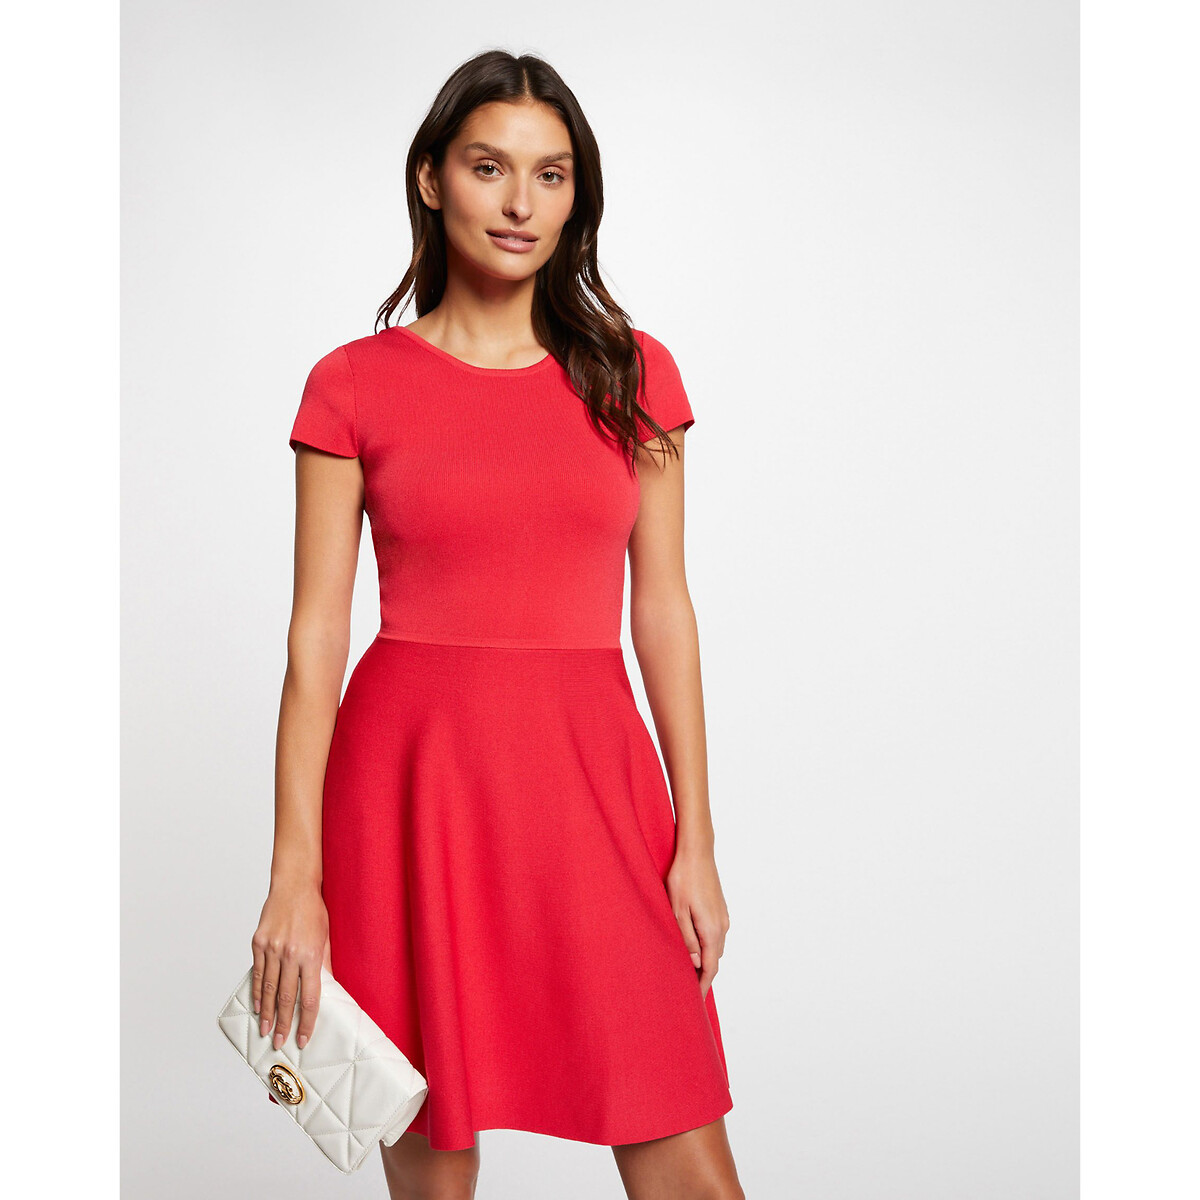 Платье трикотажное короткое и расклешенное XS красный платье короткое расклешенное с принтом xs каштановый